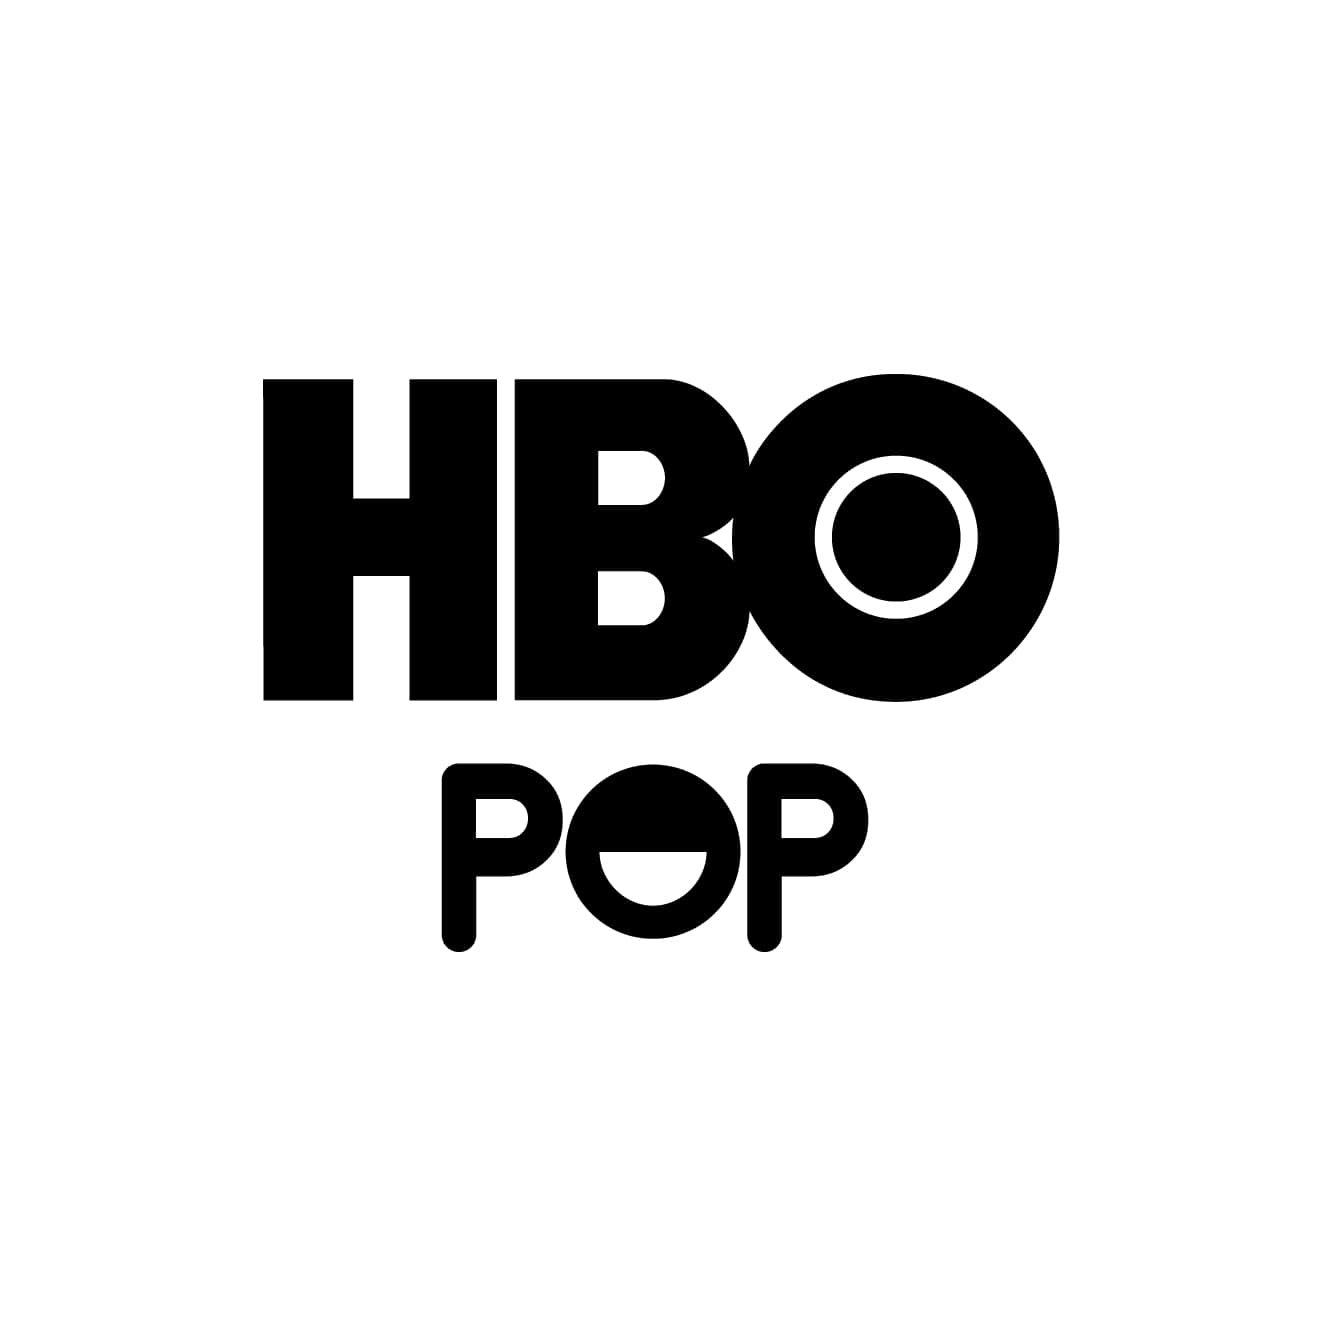 Canales HBO y Star premium mejores series películas.